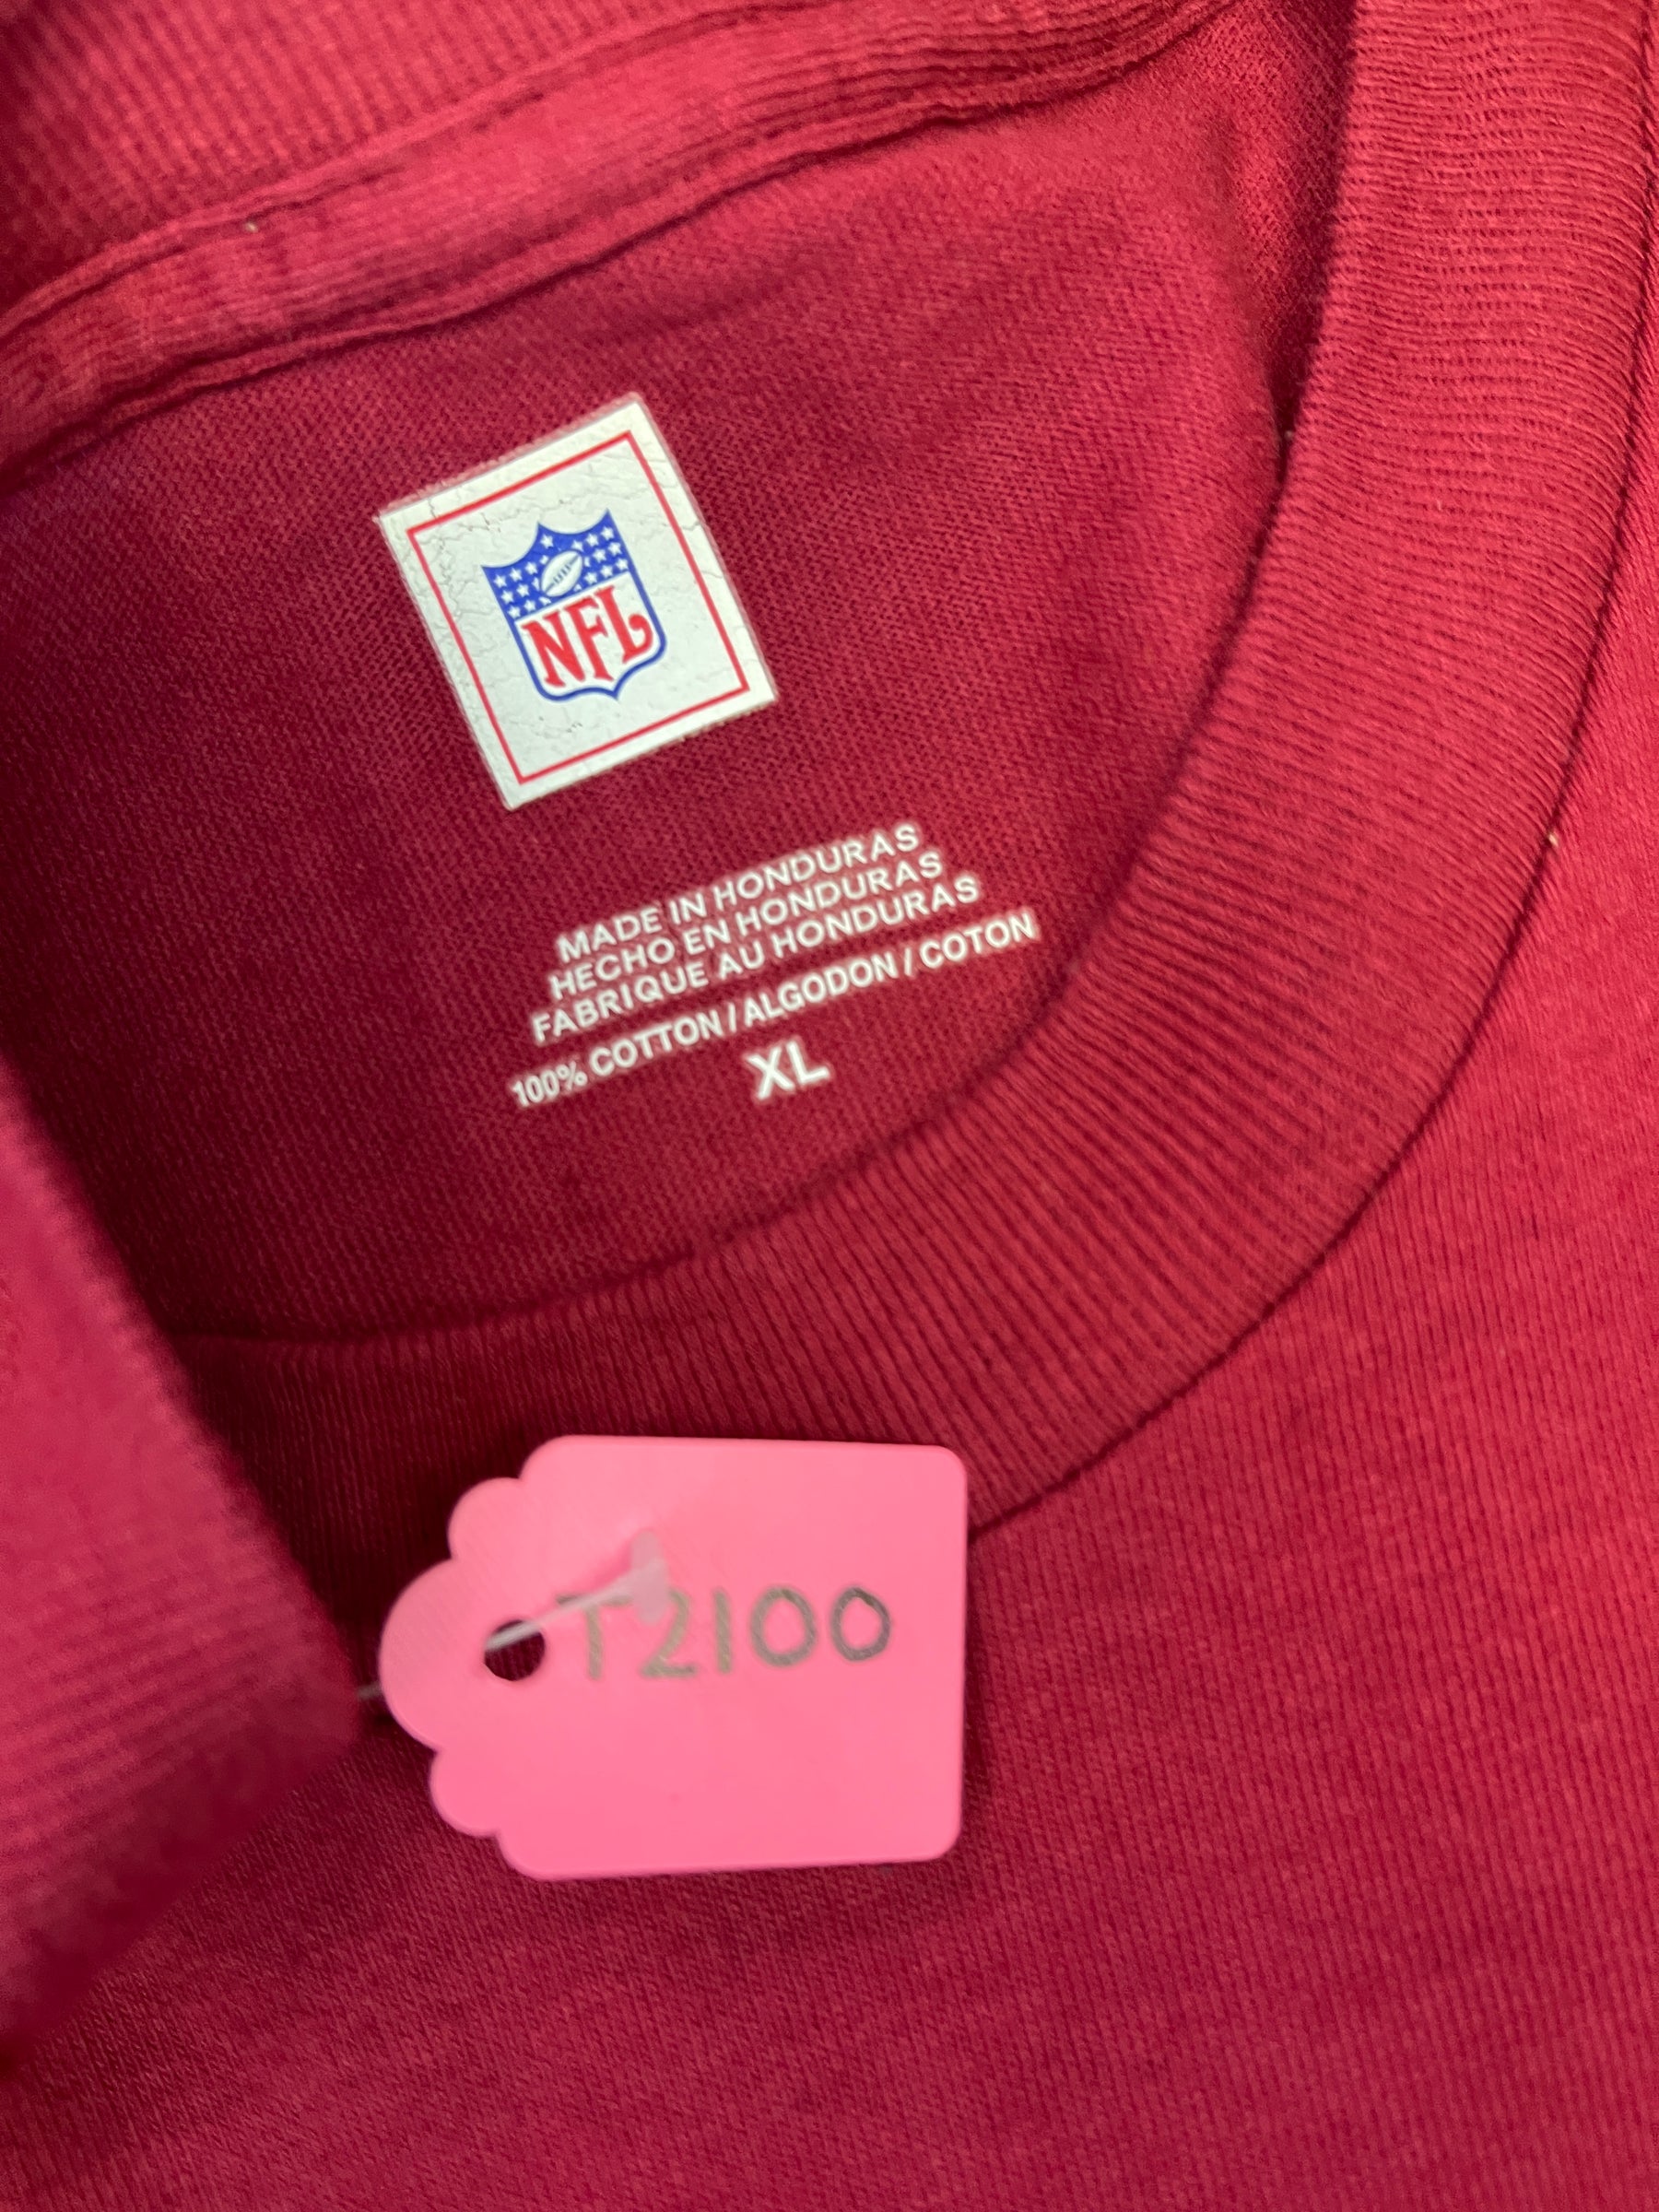 NFL Washington Commanders (Redskins) 100% Cotton L/S T-Shirt Men's X-Large